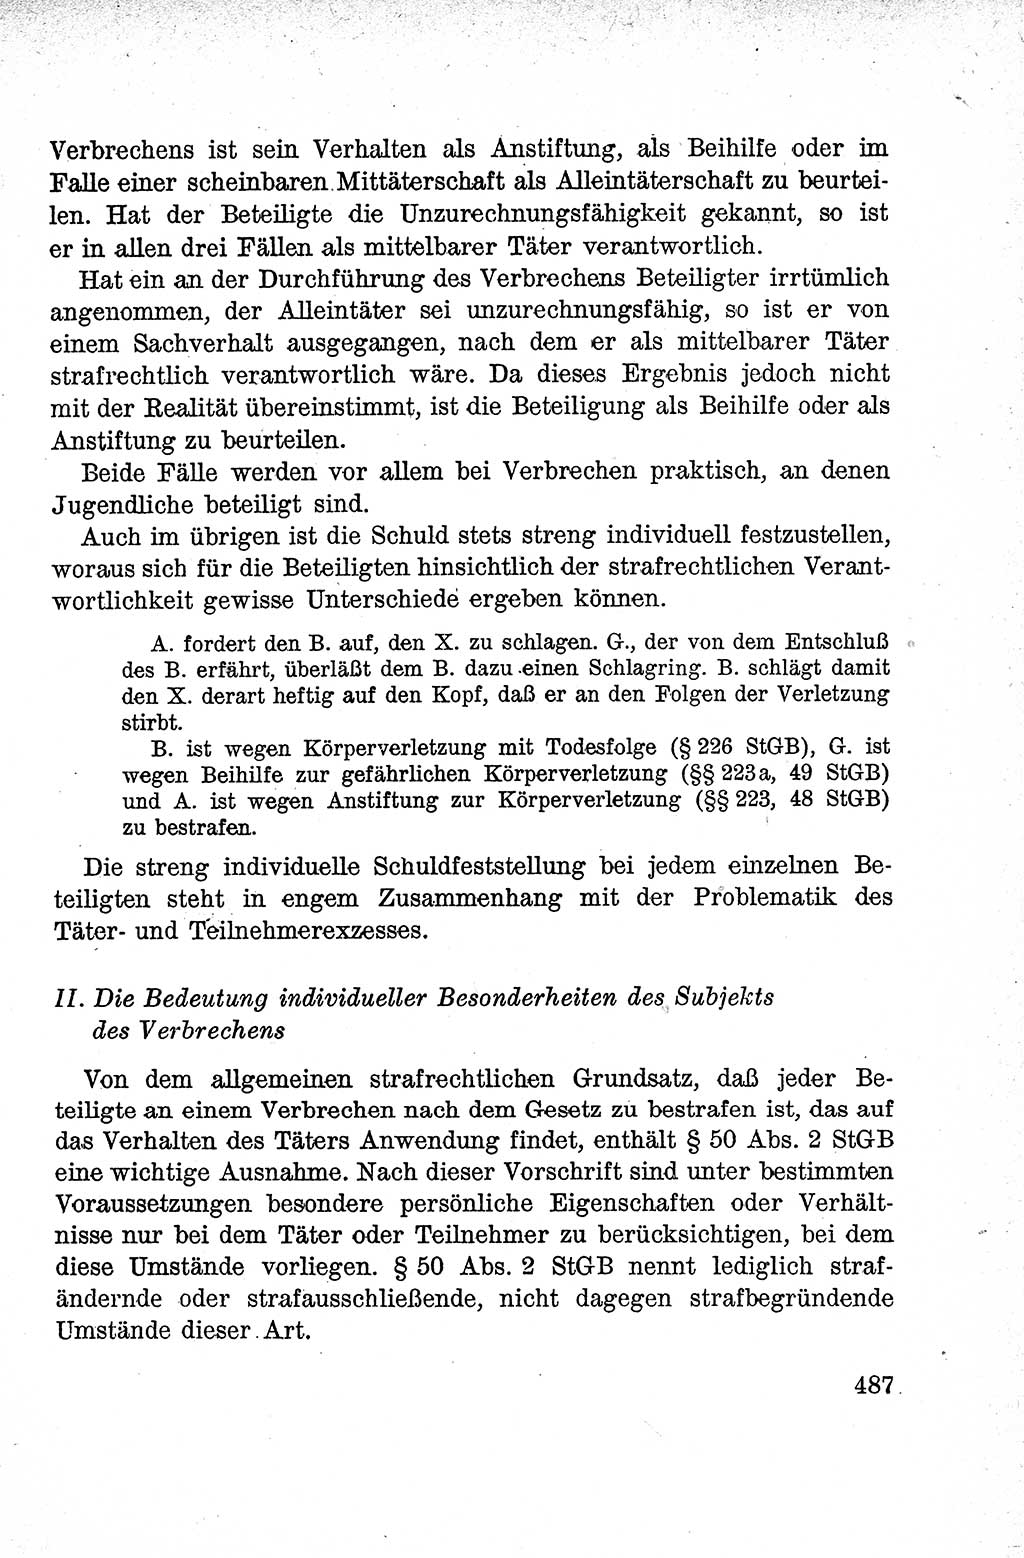 Lehrbuch des Strafrechts der Deutschen Demokratischen Republik (DDR), Allgemeiner Teil 1959, Seite 487 (Lb. Strafr. DDR AT 1959, S. 487)